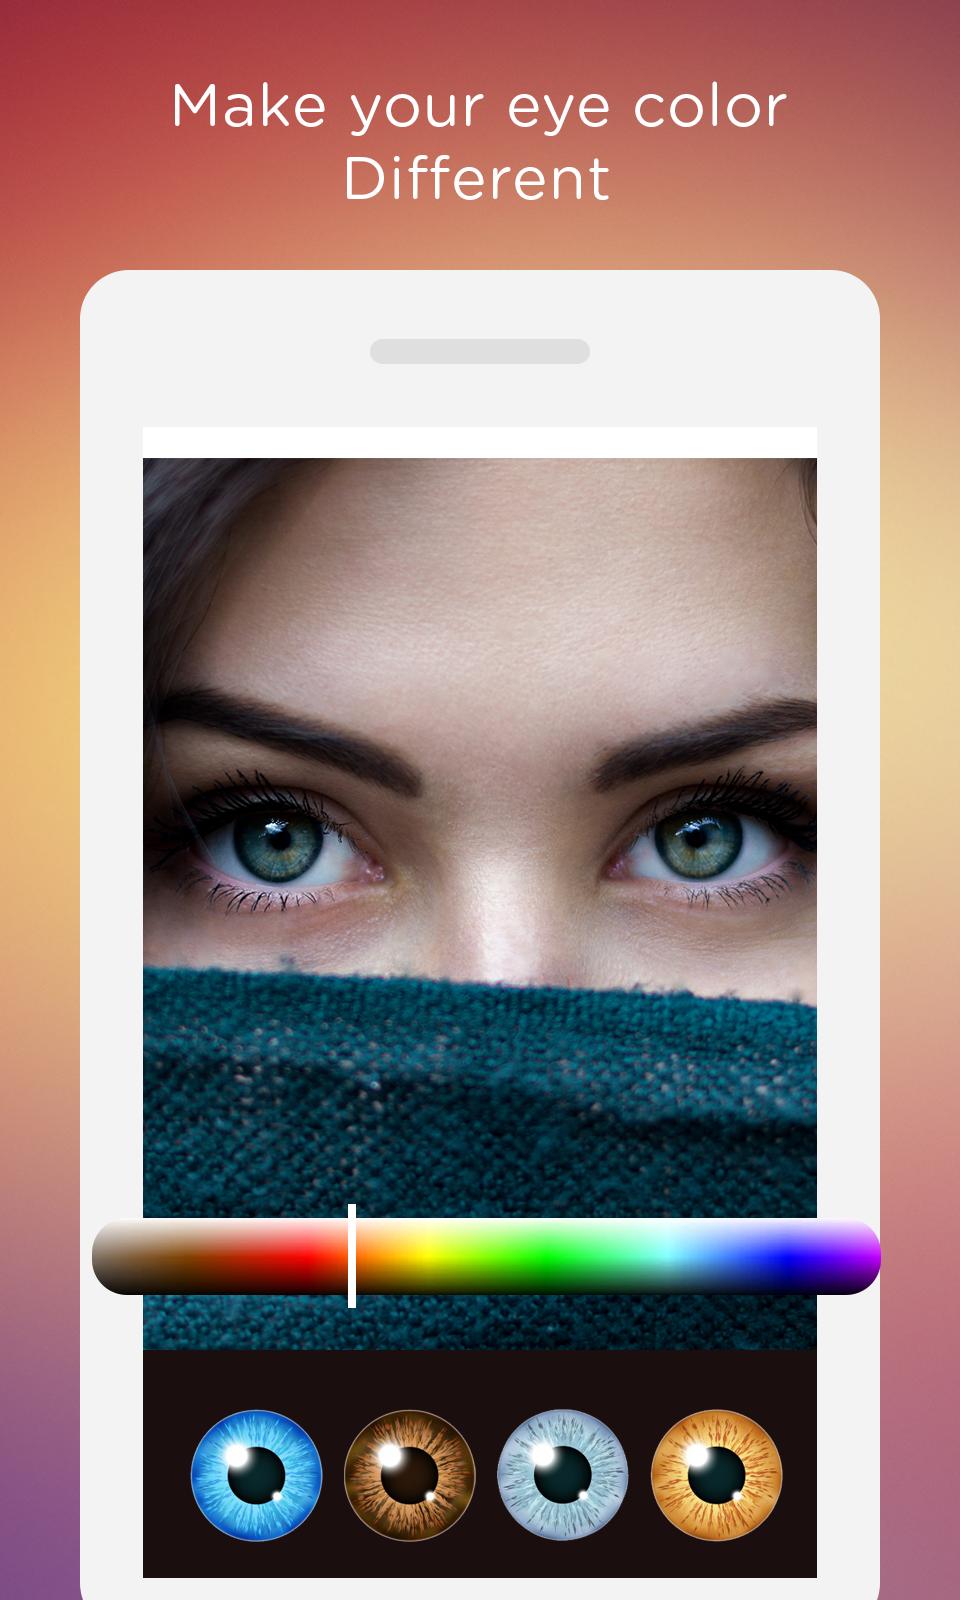 Cambiador de color de ojos :Editor de ojos for Android - APK Download